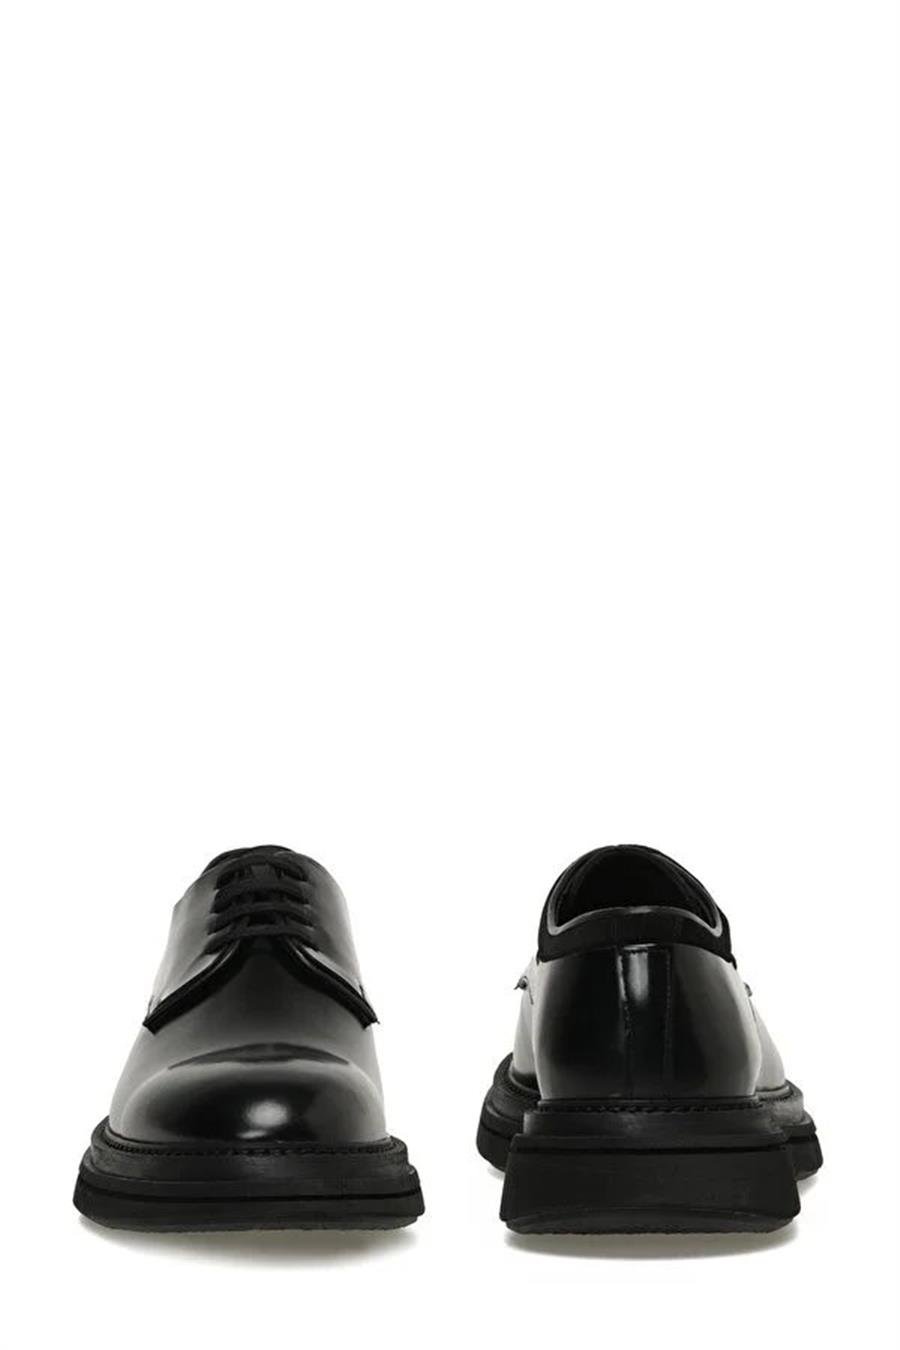 İnci Kalo 3Pr Siyah Erkek Informal Bağcıklı Klasik Ayakkabı